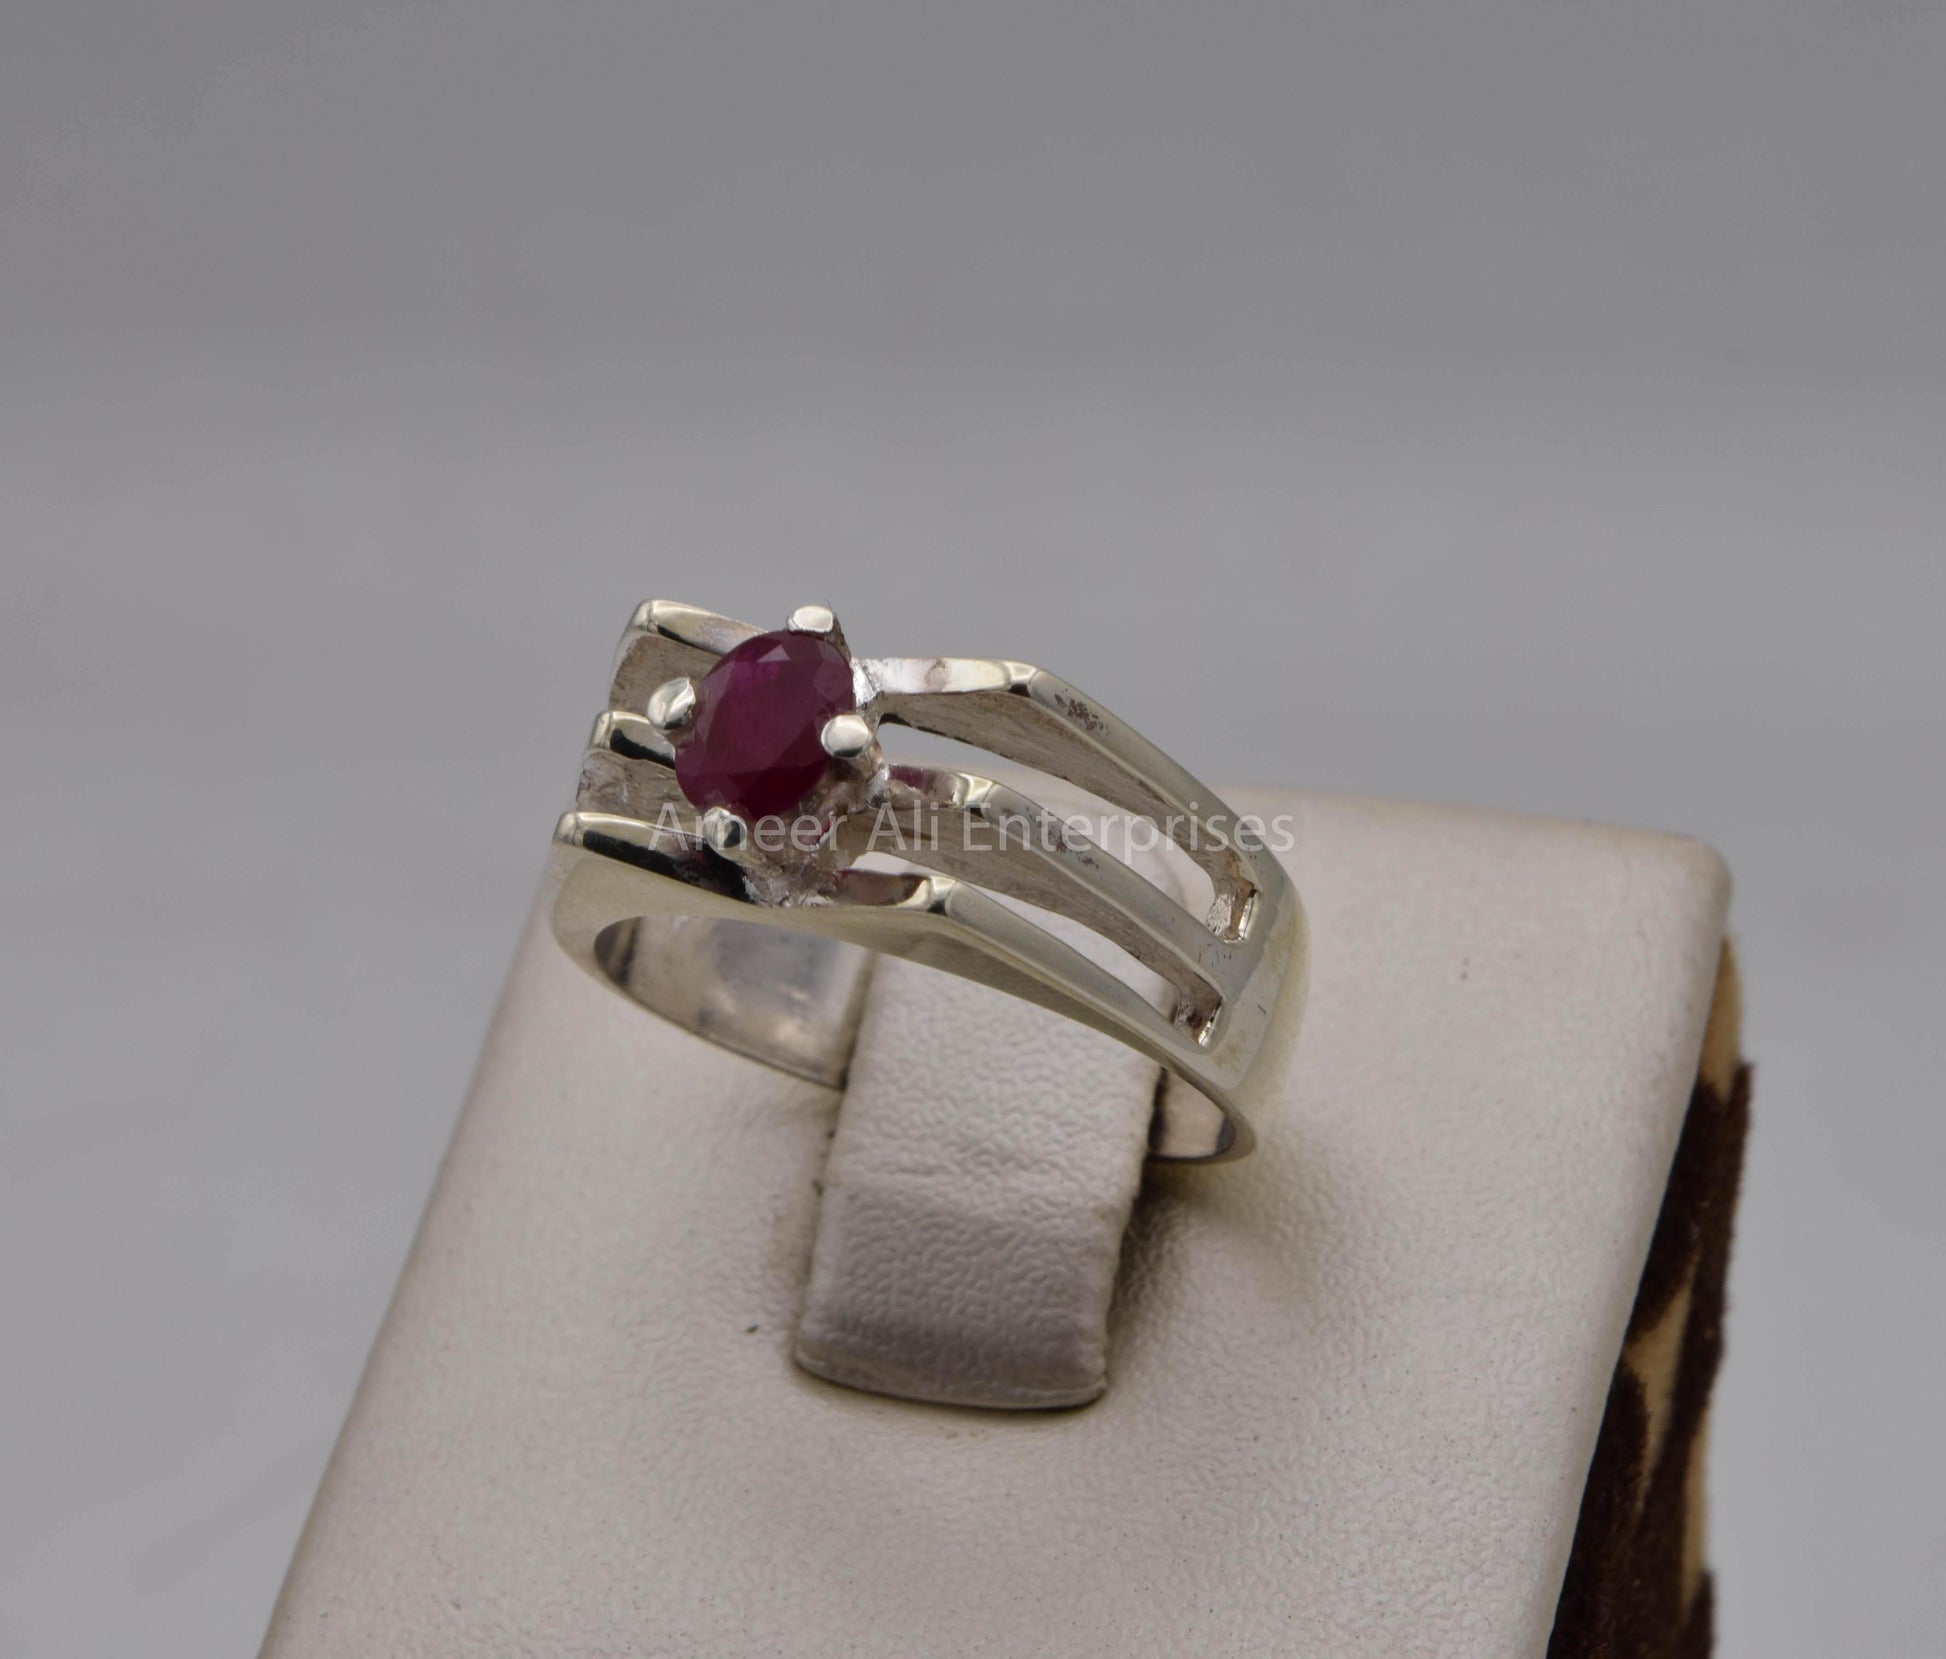 AAE 5705 Chandi Ring 925, Stone: Ruby - AmeerAliEnterprises